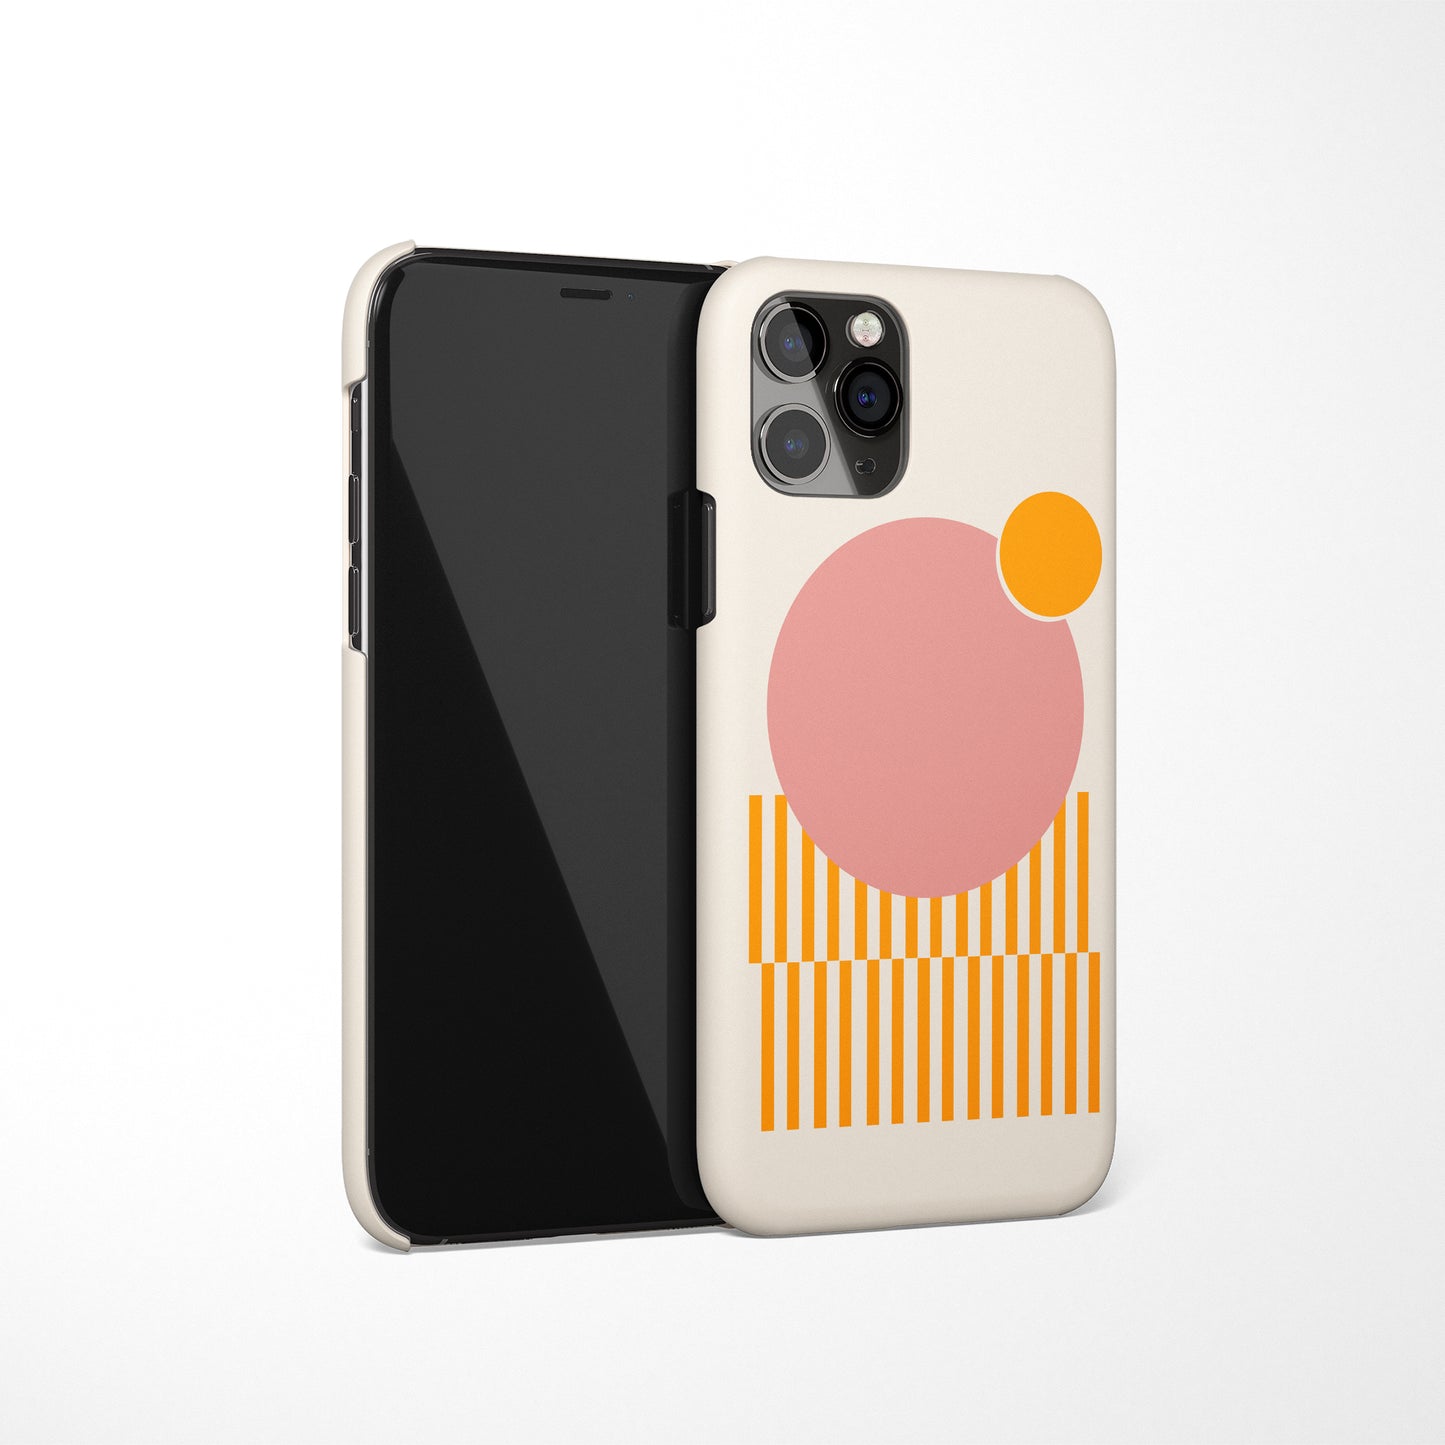 Minimalist Design iPhone Case